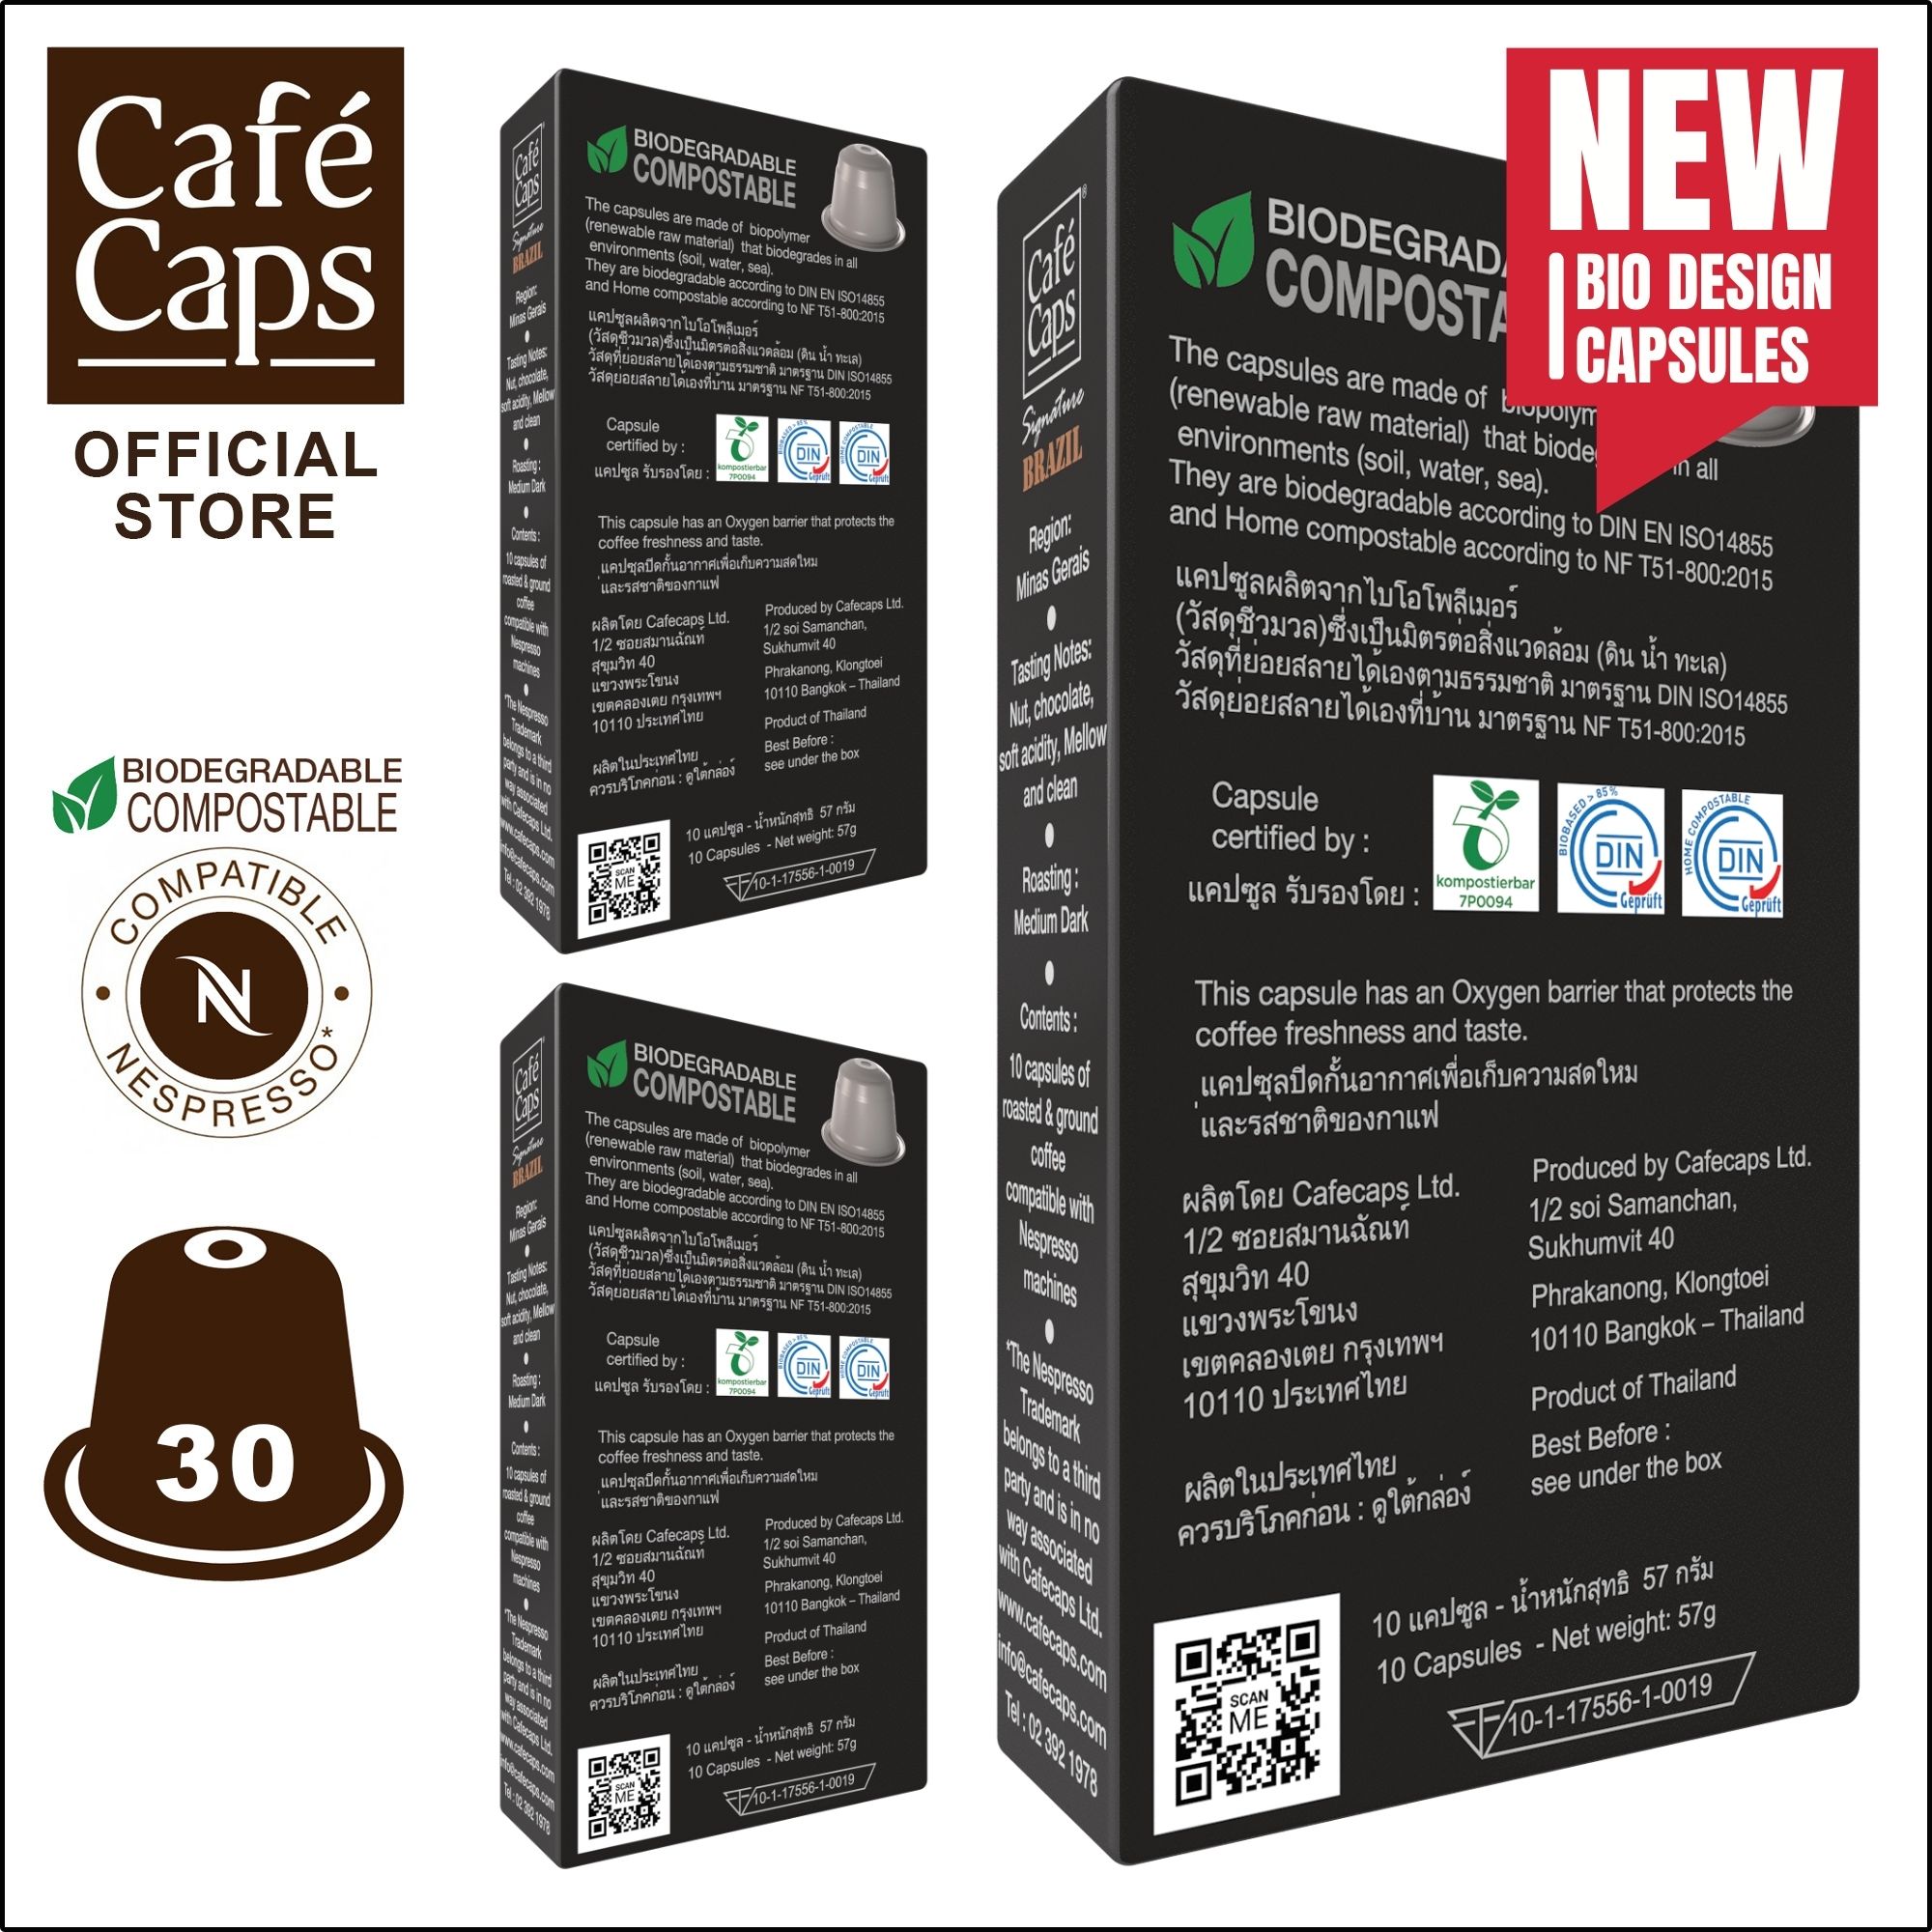 รูปภาพของ Cafecaps - แคปซูลกาแฟ Nespresso Compatible Signature Brazil (3กล่อง X 10 แคปซูล) - กาแฟคั่วกลาง- เทสติ้งโน๊ต ถั่ว, ช็อคโกแลตพร้อมโน้ตชิมรสเปรี้ยวอ่อน ๆ  - แคปซูลกาแฟใช้ได้กับเครื่อง Nespresso เท่านั้น